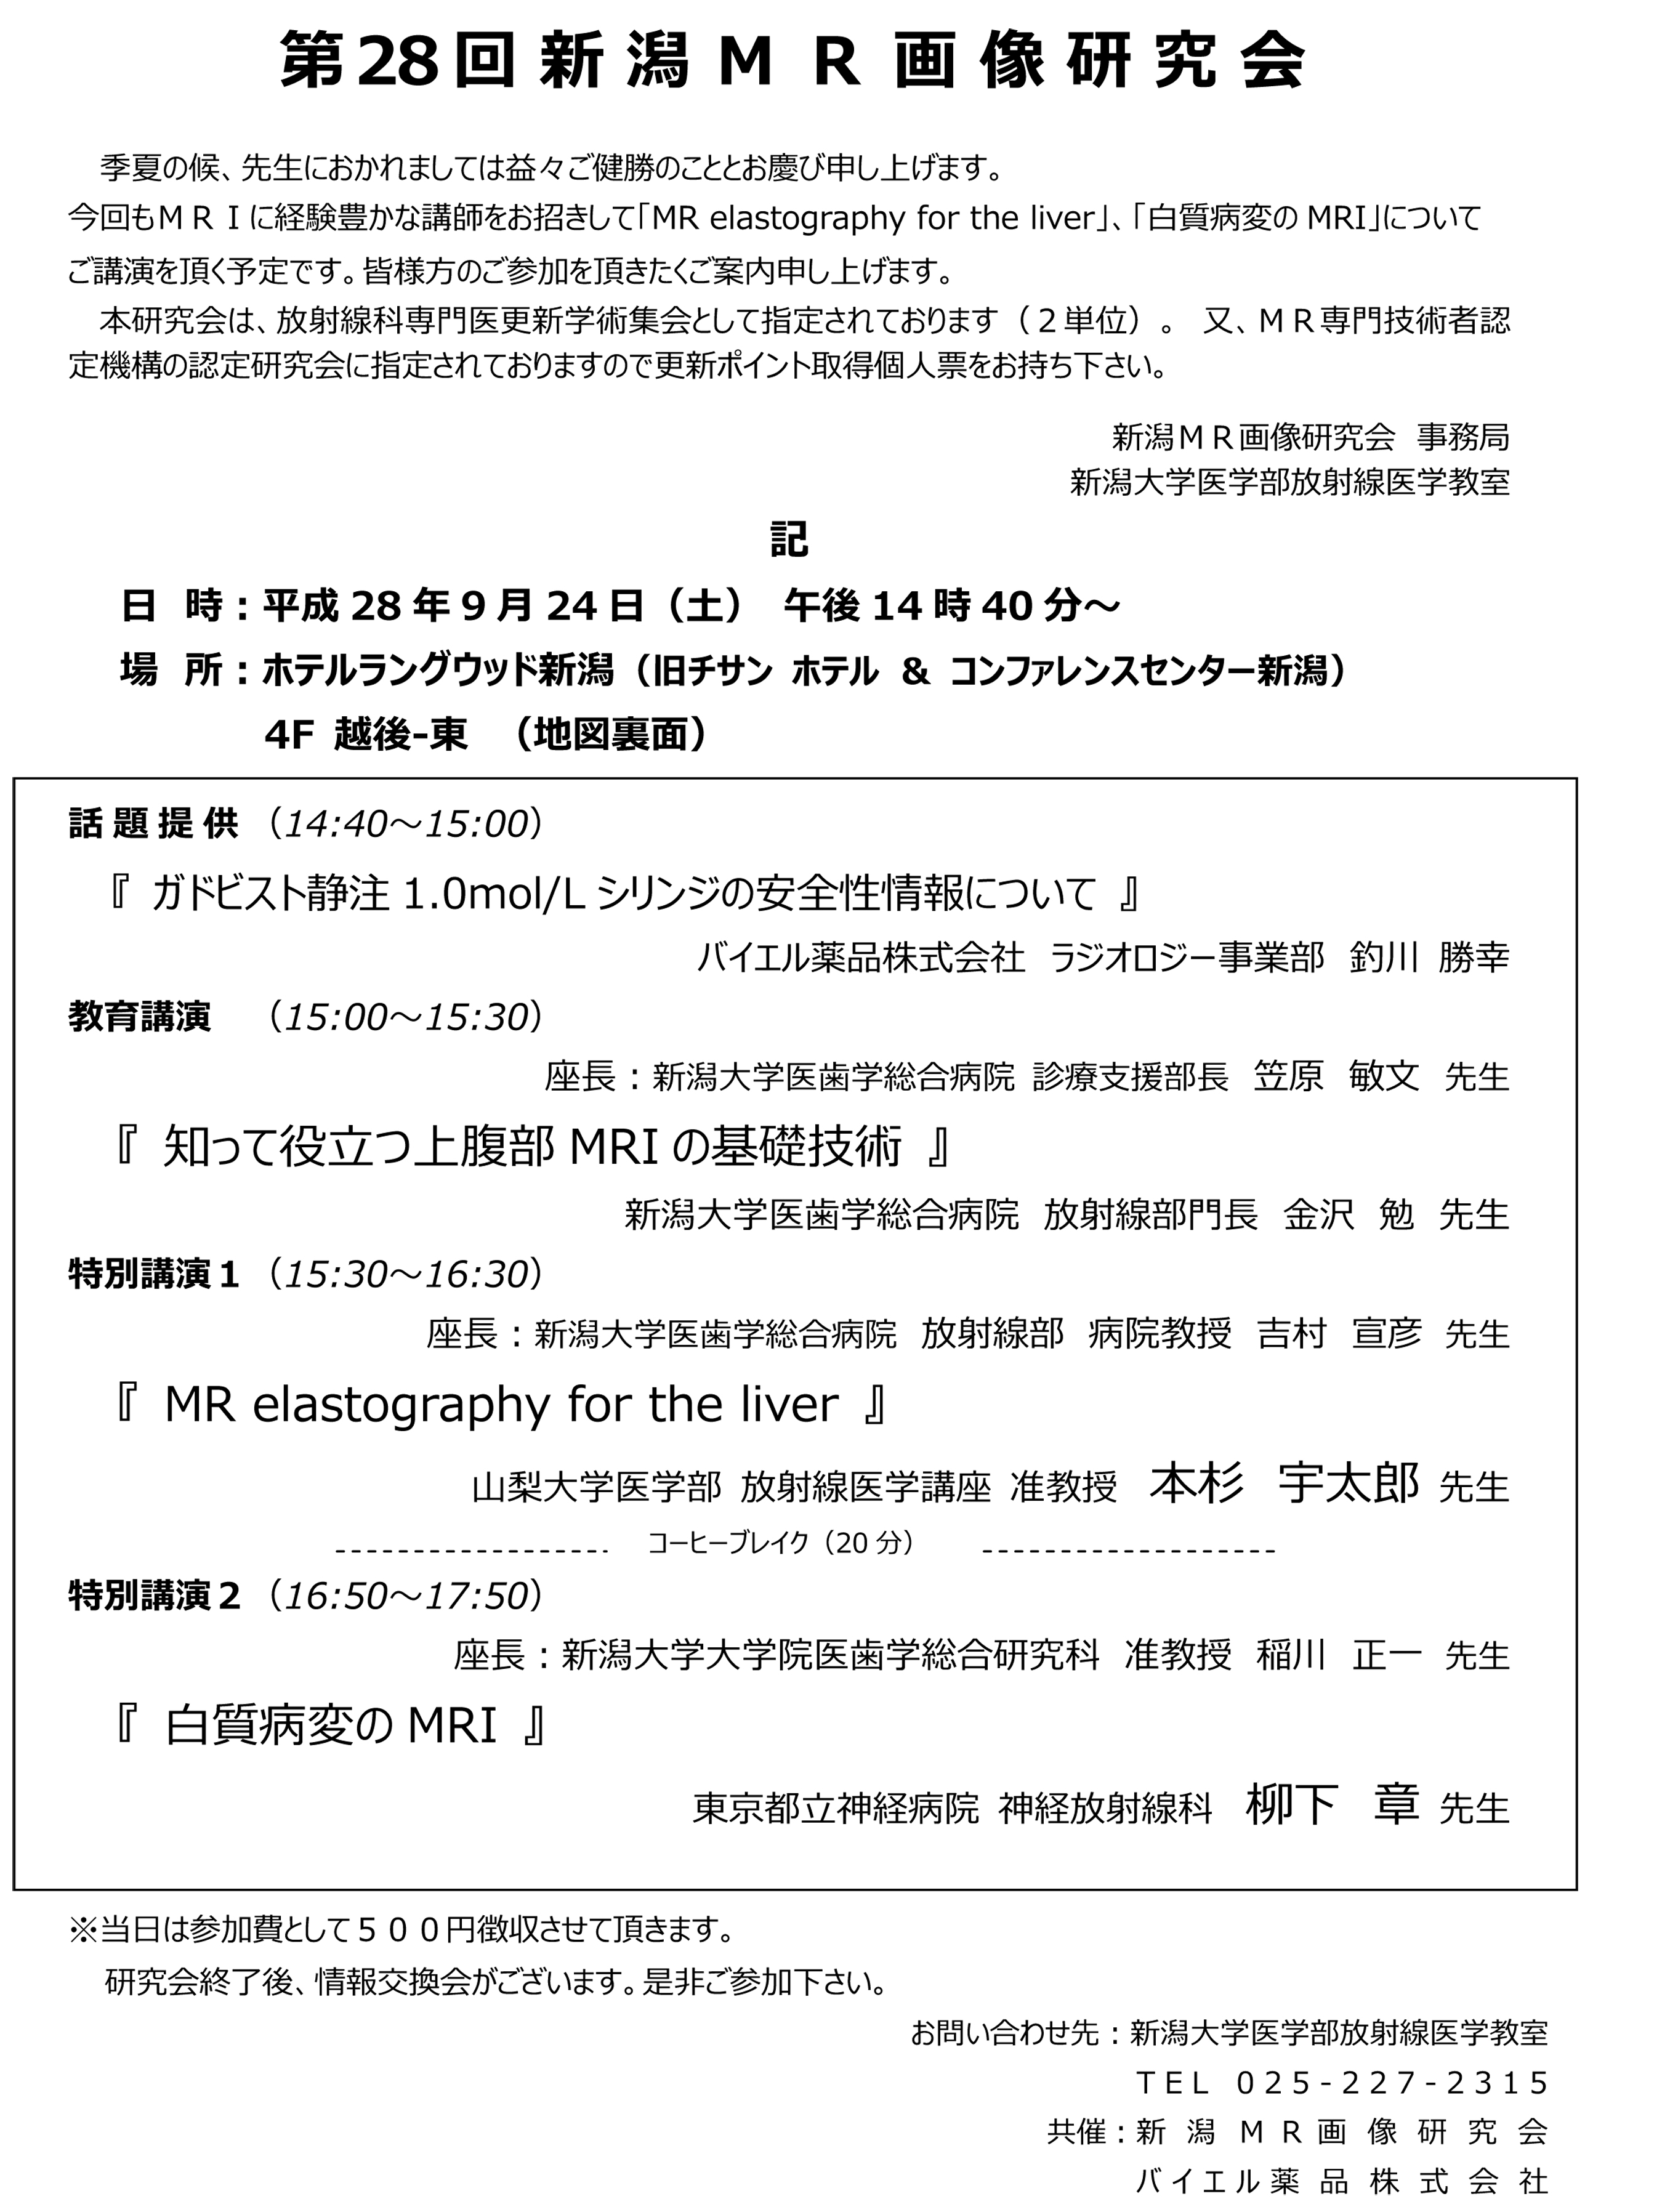 20160924 　本杉　第28回新潟MR画像研究会プログラム（最終）